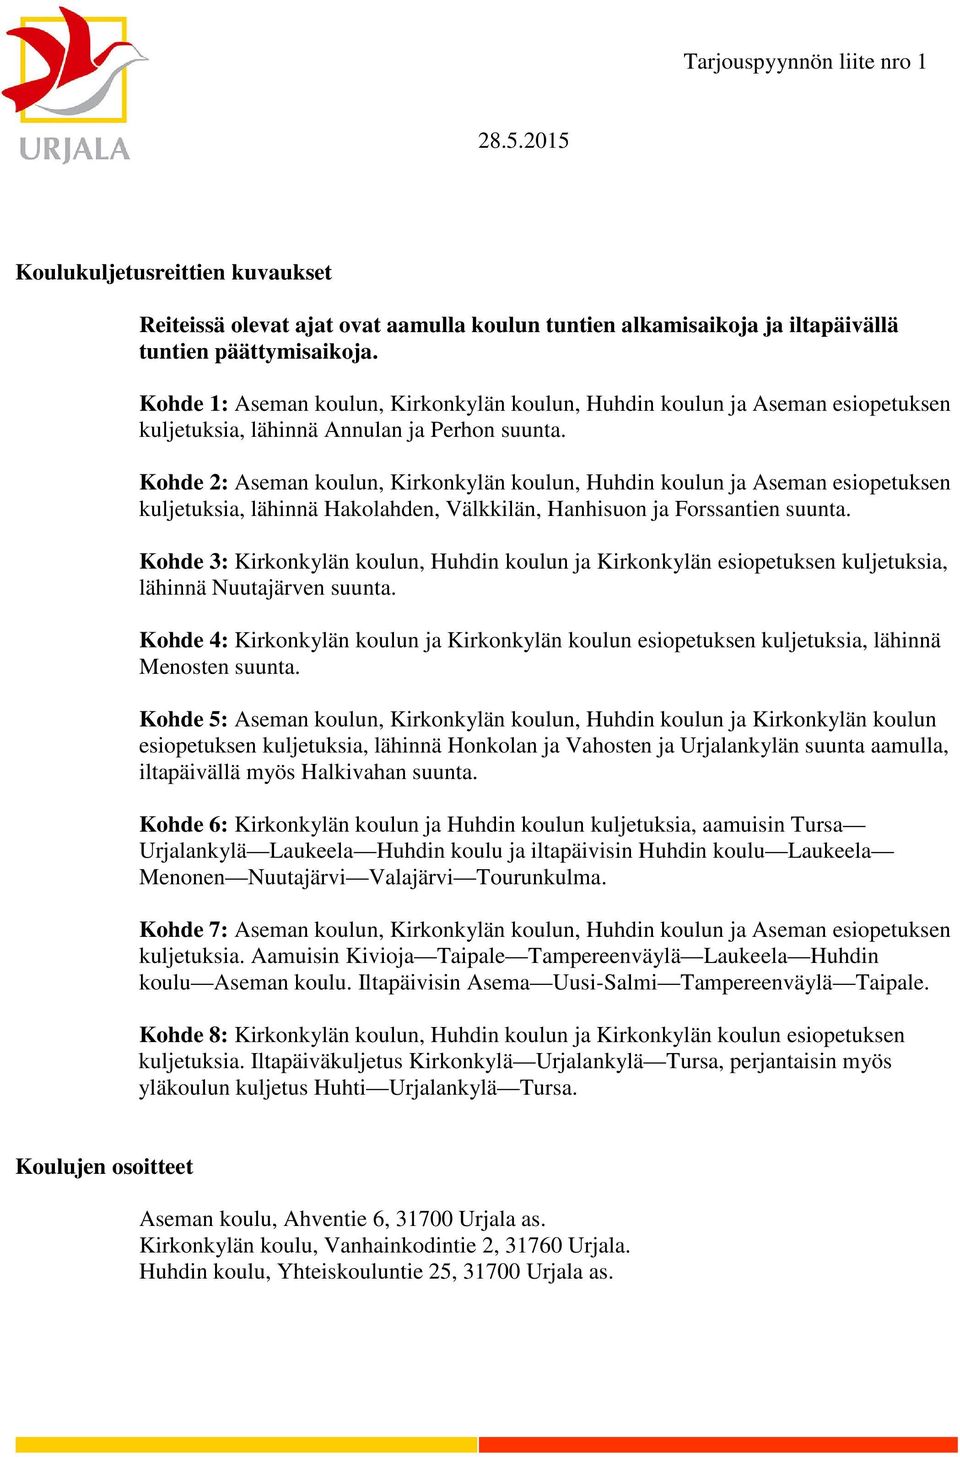 Kohde 2: Aseman koulun, Kirkonkylän koulun, Huhdin koulun ja Aseman esiopetuksen kuljetuksia, lähinnä Hakolahden, Välkkilän, Hanhisuon ja Forssantien suunta.